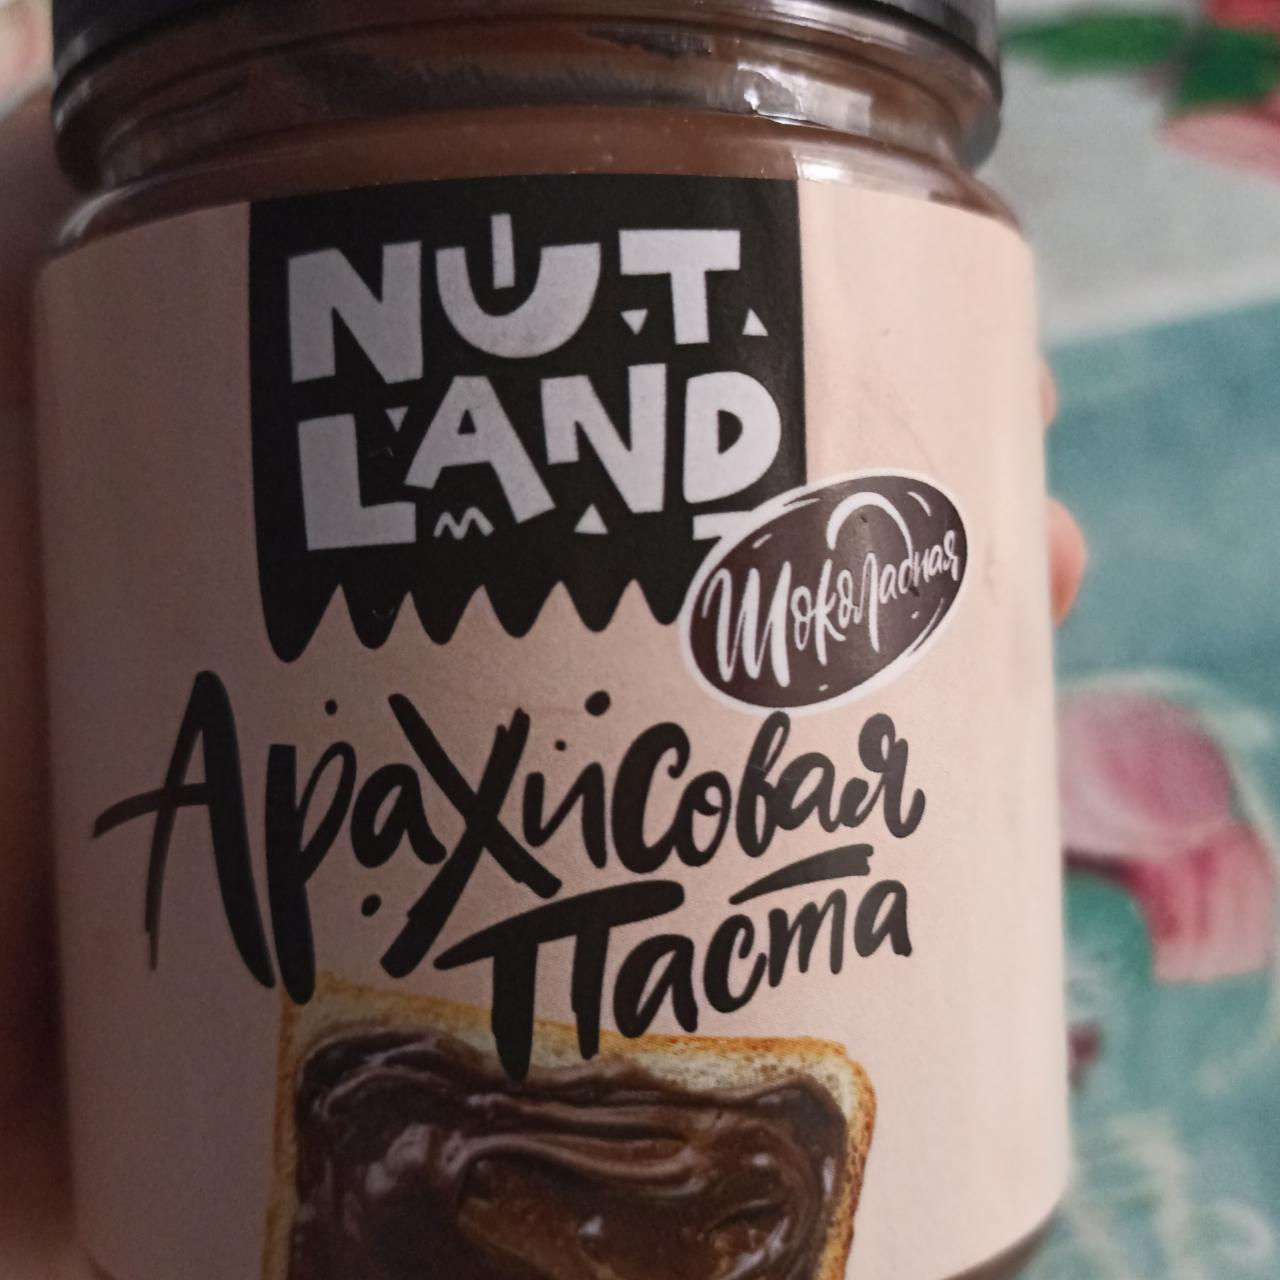 Фото - Арахисовая паста шоколадная Nut land